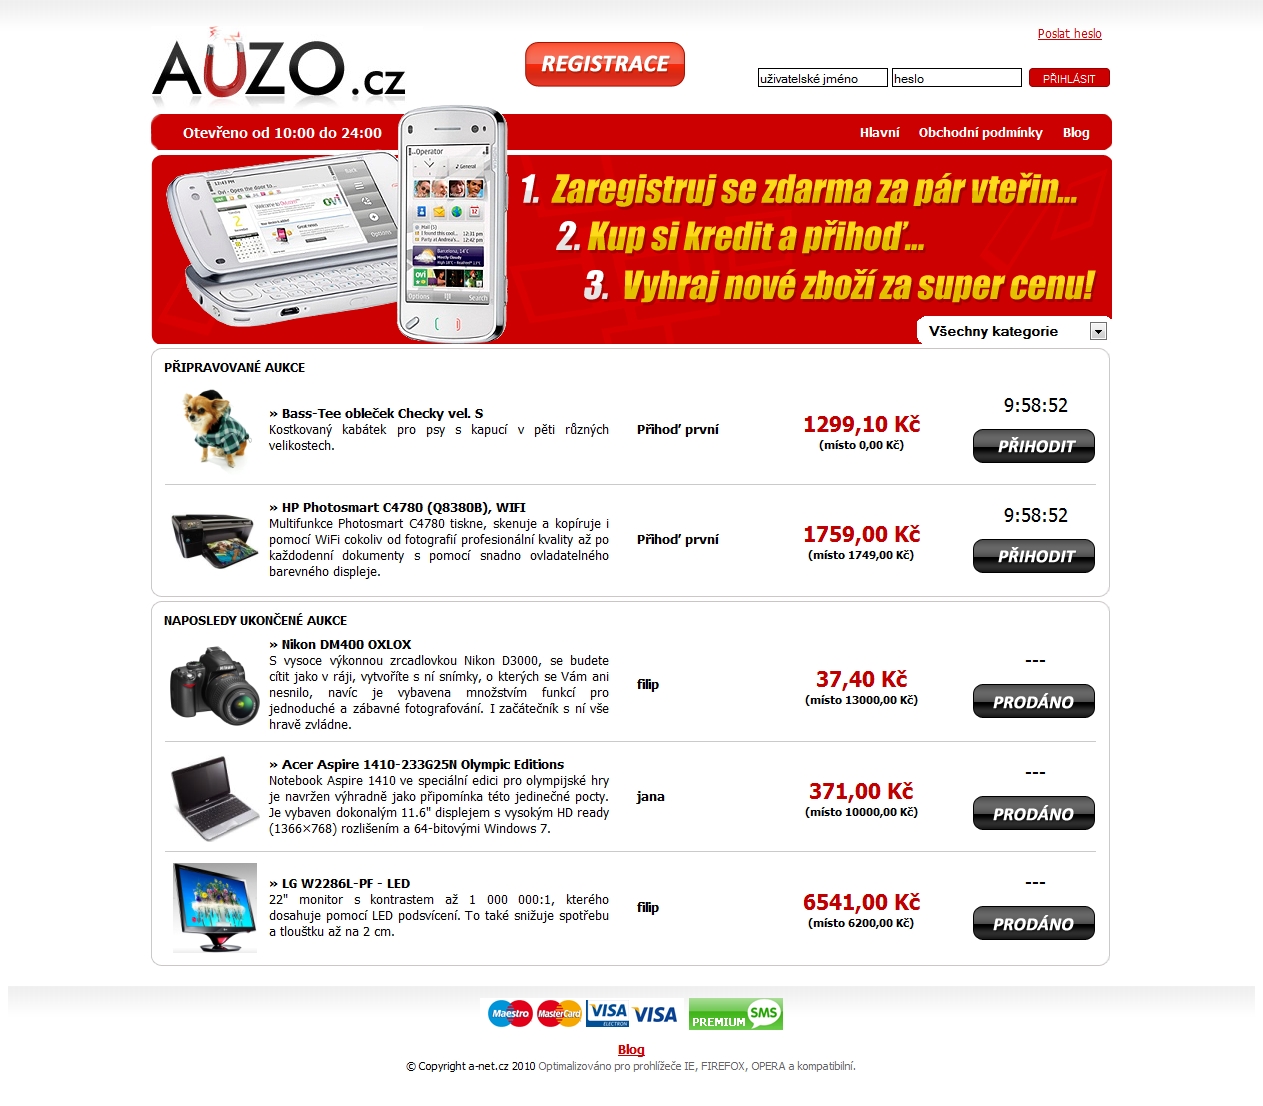 Auzo.cz - Pay&Bid aukce